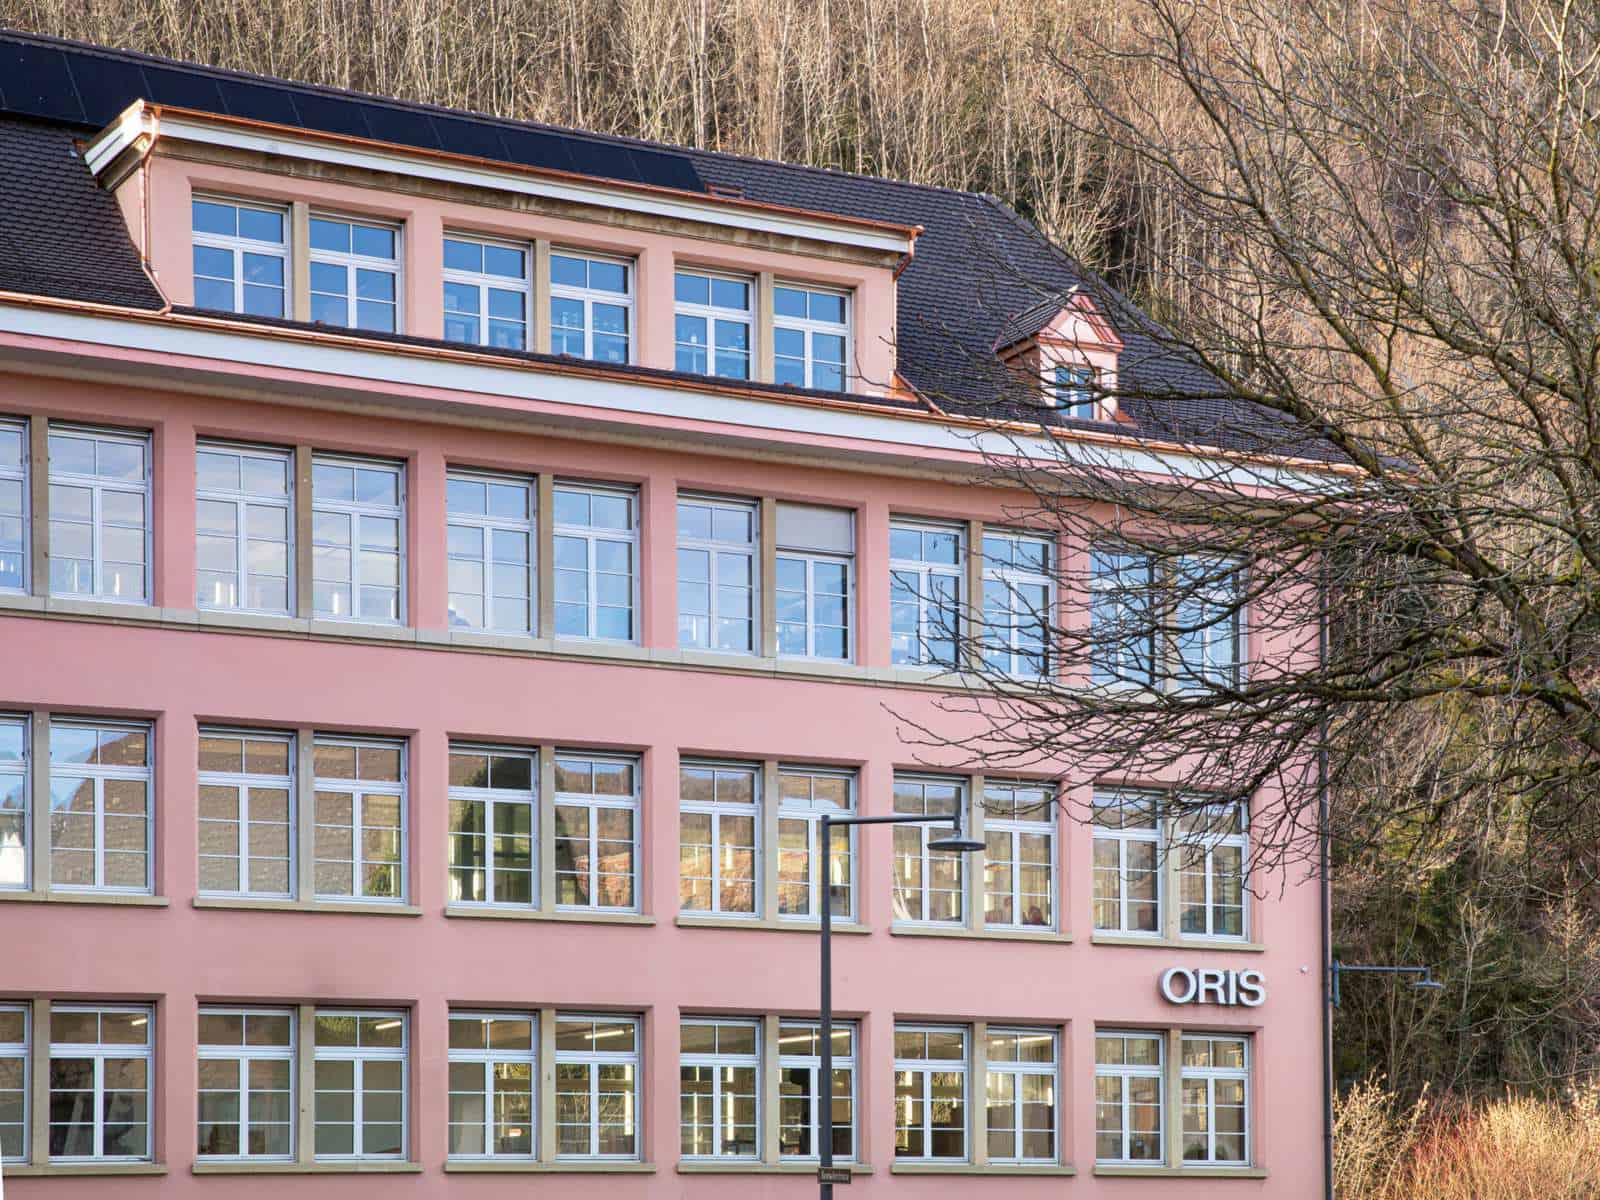 Firmengebäude von Oris in Hölstein. Dach mit Solarzellen